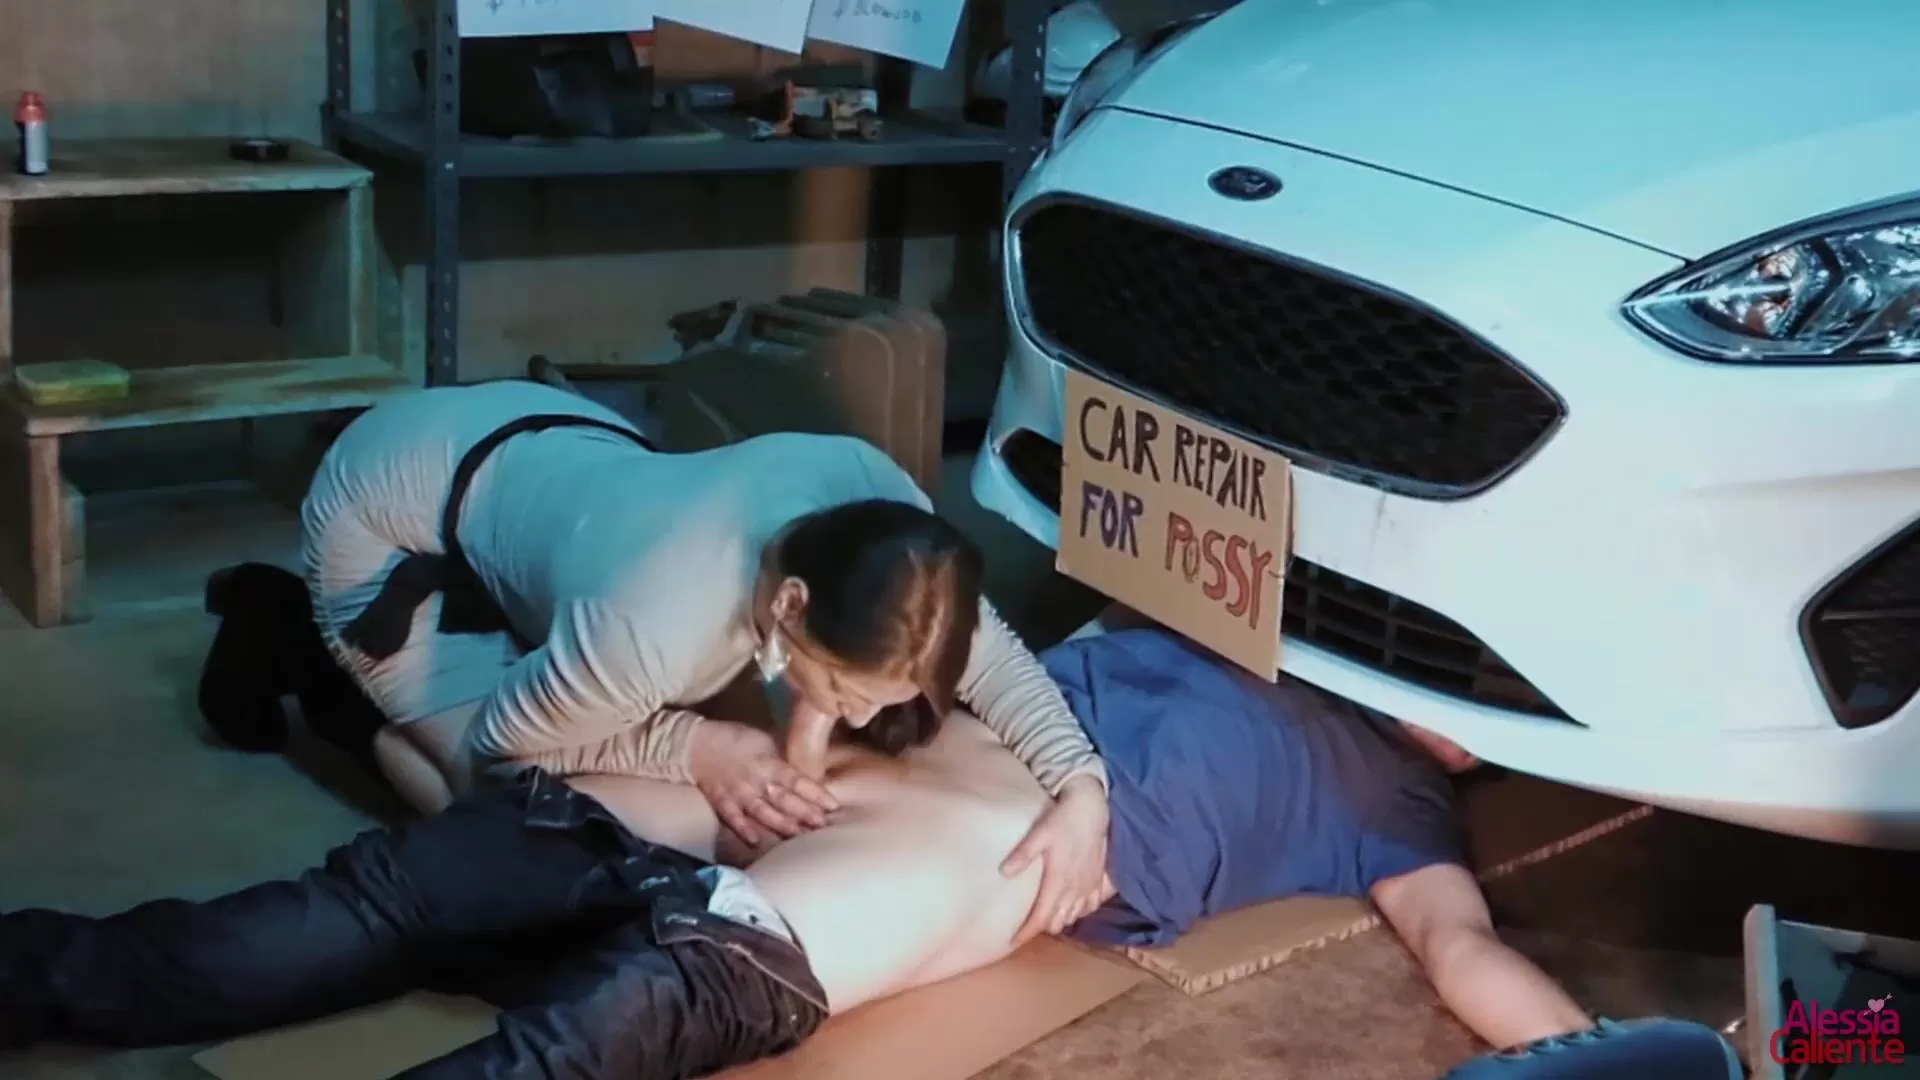 Car repair porn